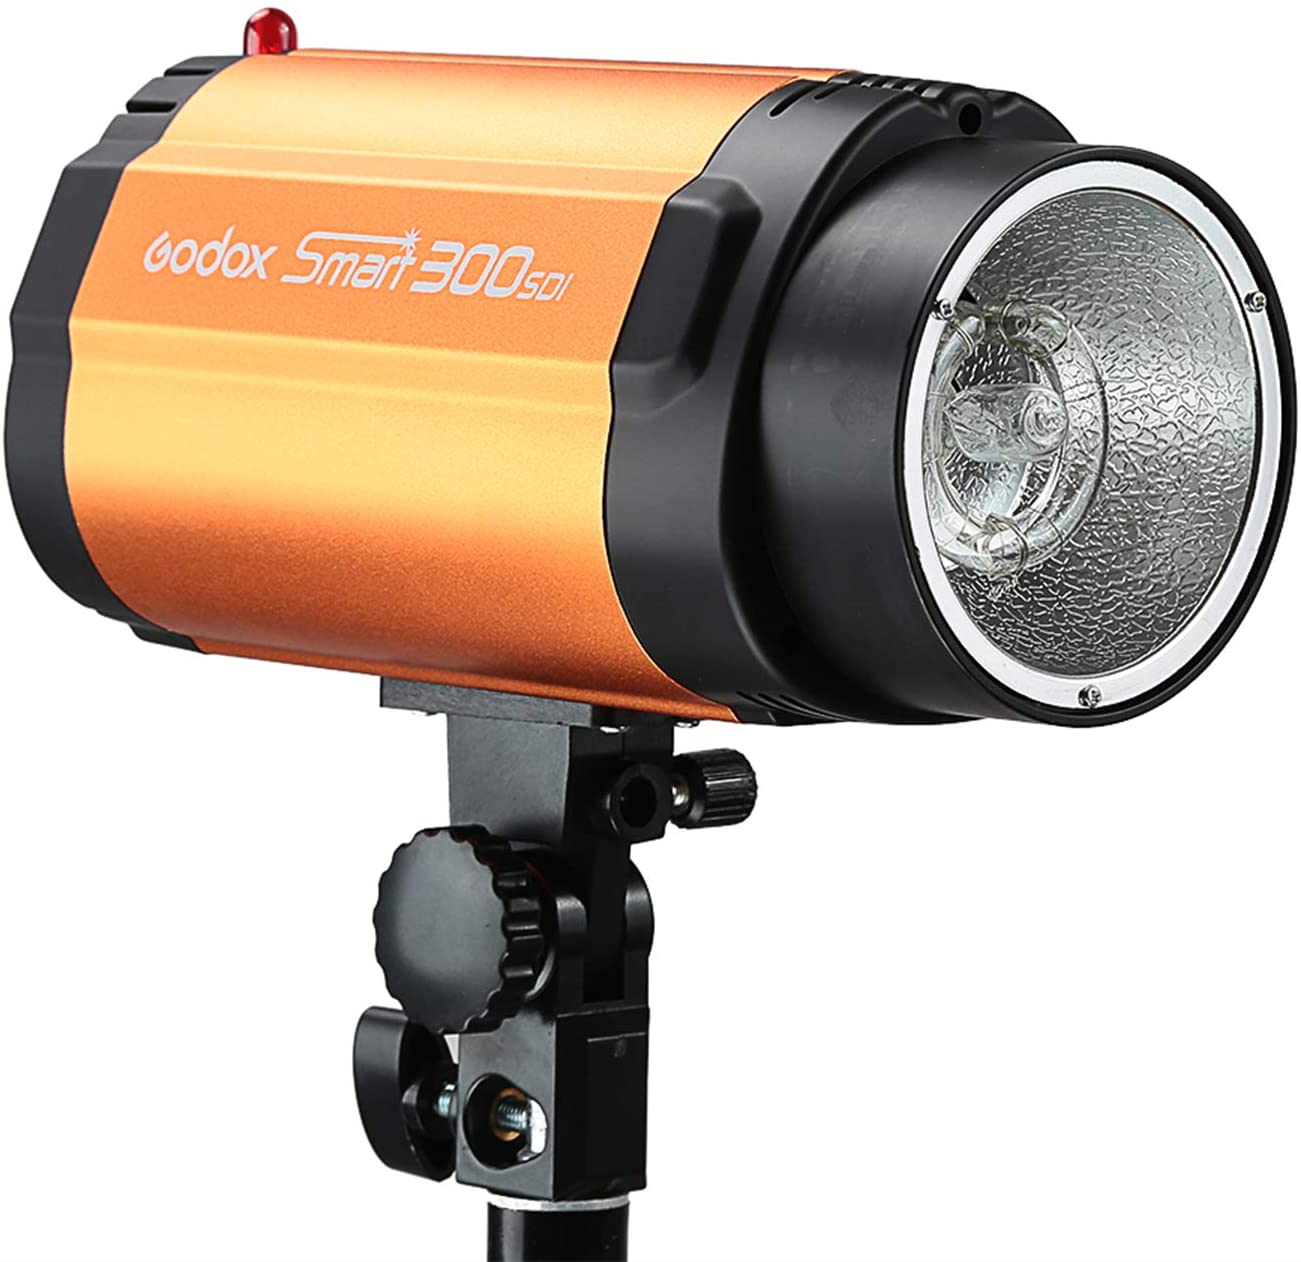 Perímetro emocionante regular Godox 300SDI 300Ws Smart Strobe Flash Studio Light | Lensmanexpress.com